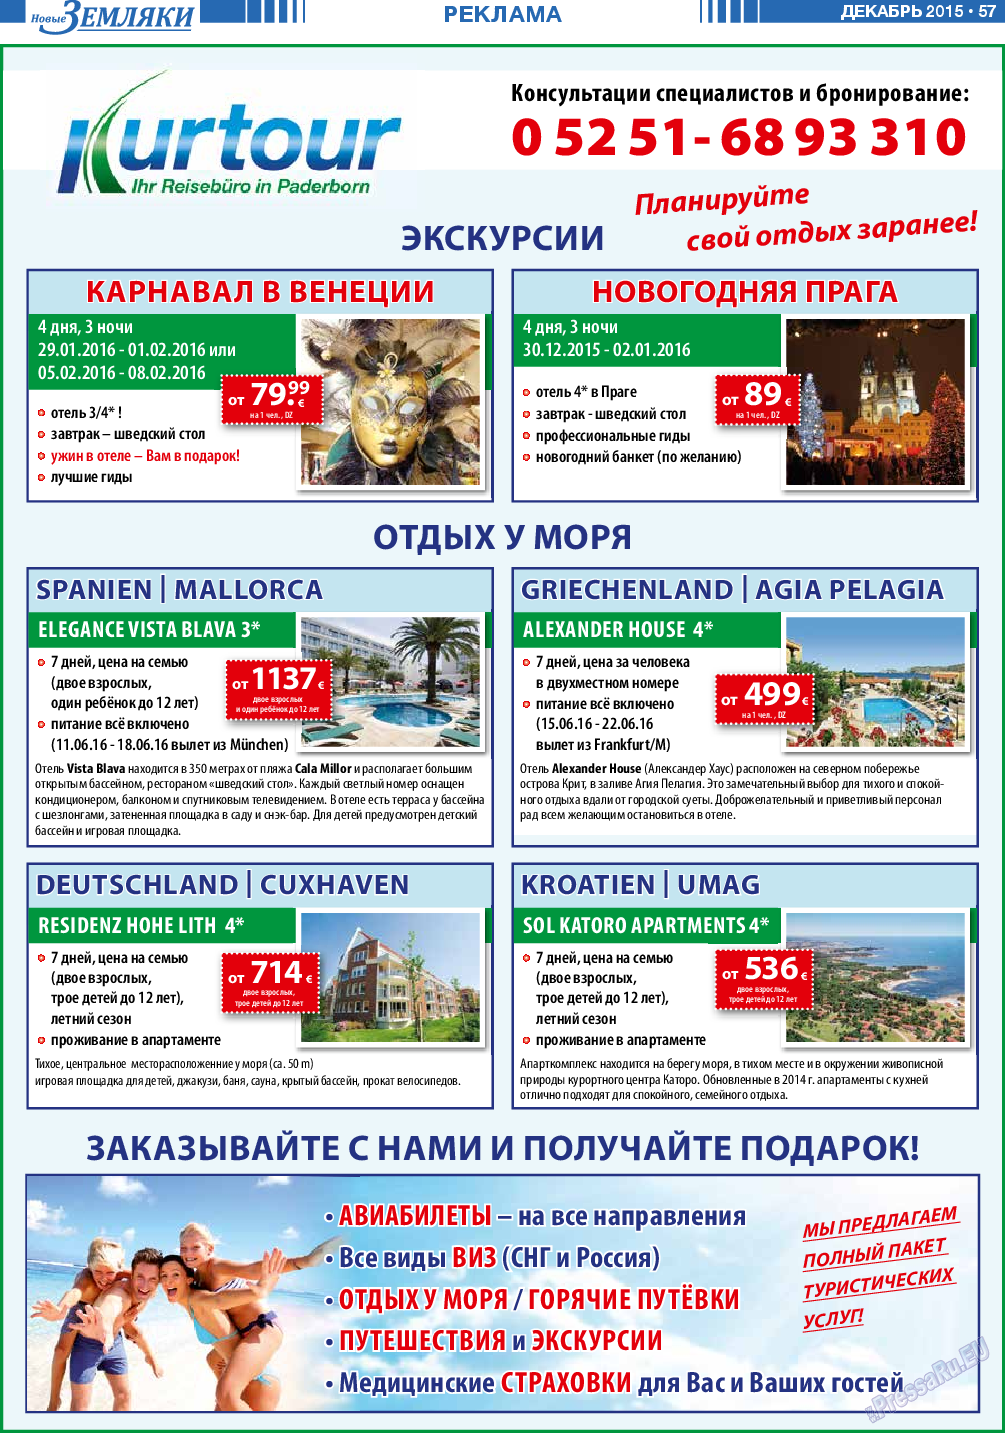 Новые Земляки, газета. 2015 №12 стр.57